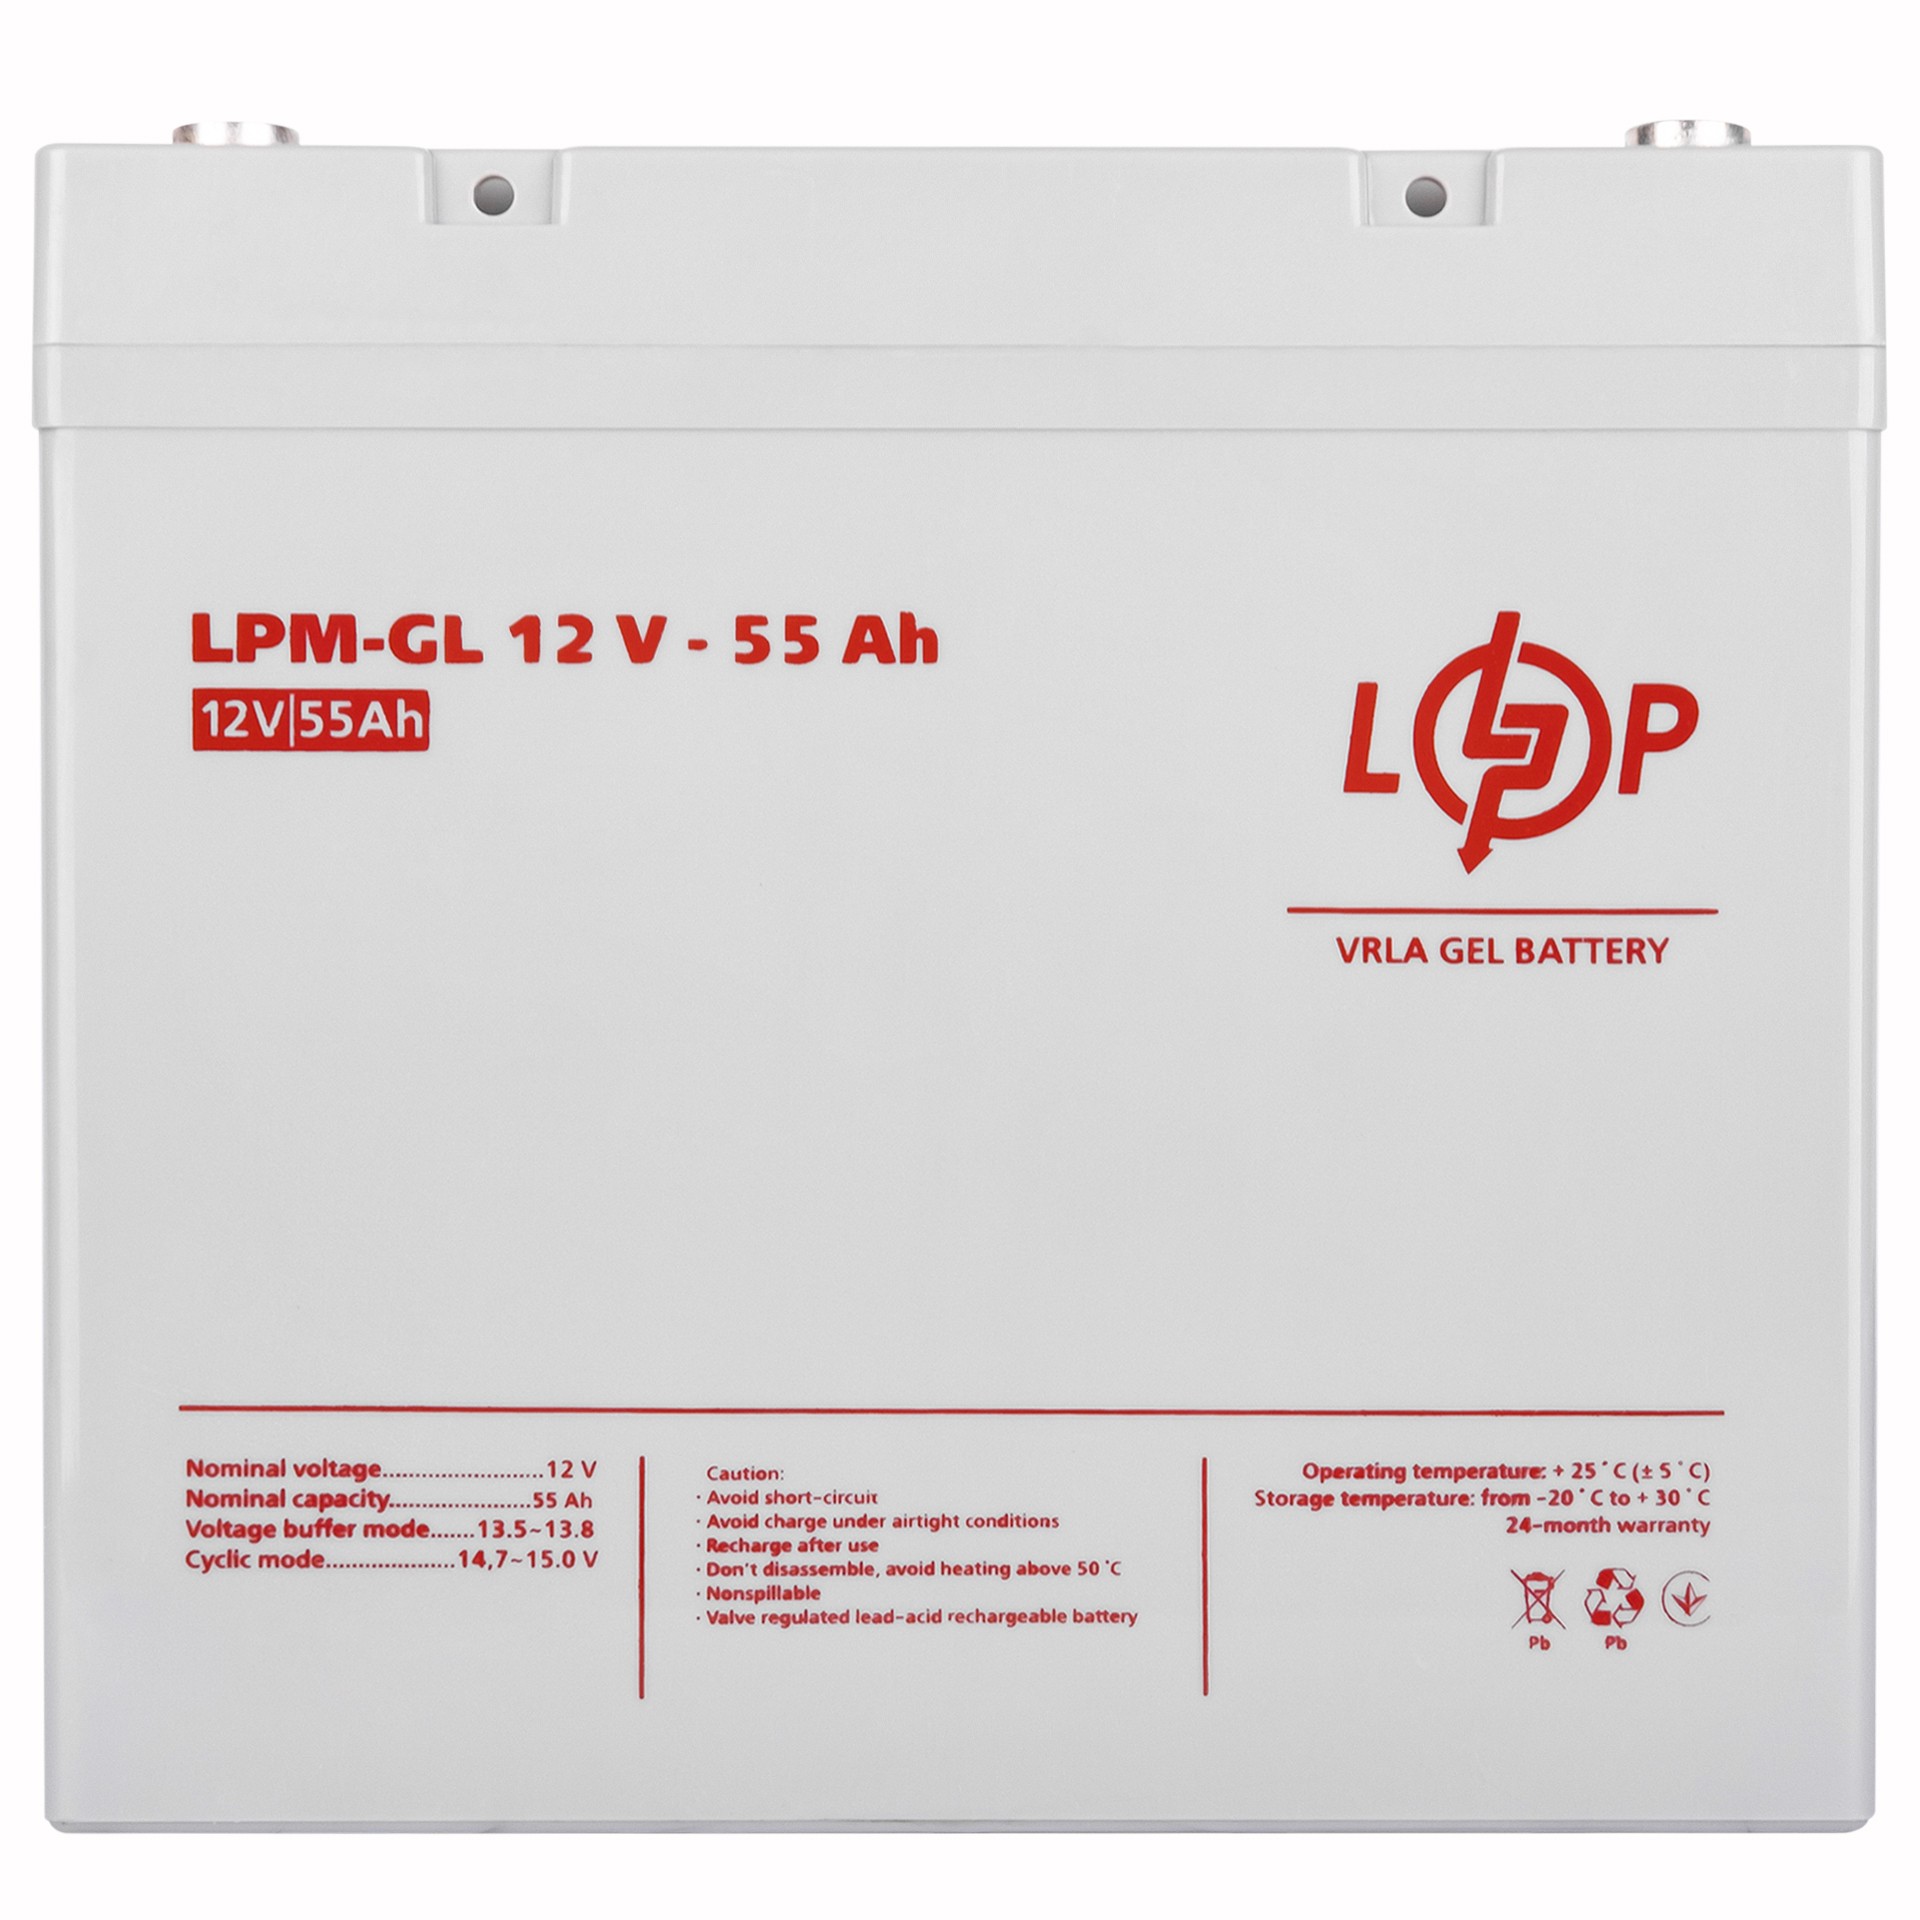 Купить аккумулятор LogicPower LPM-GL 12V - 55 Ah в Днепре